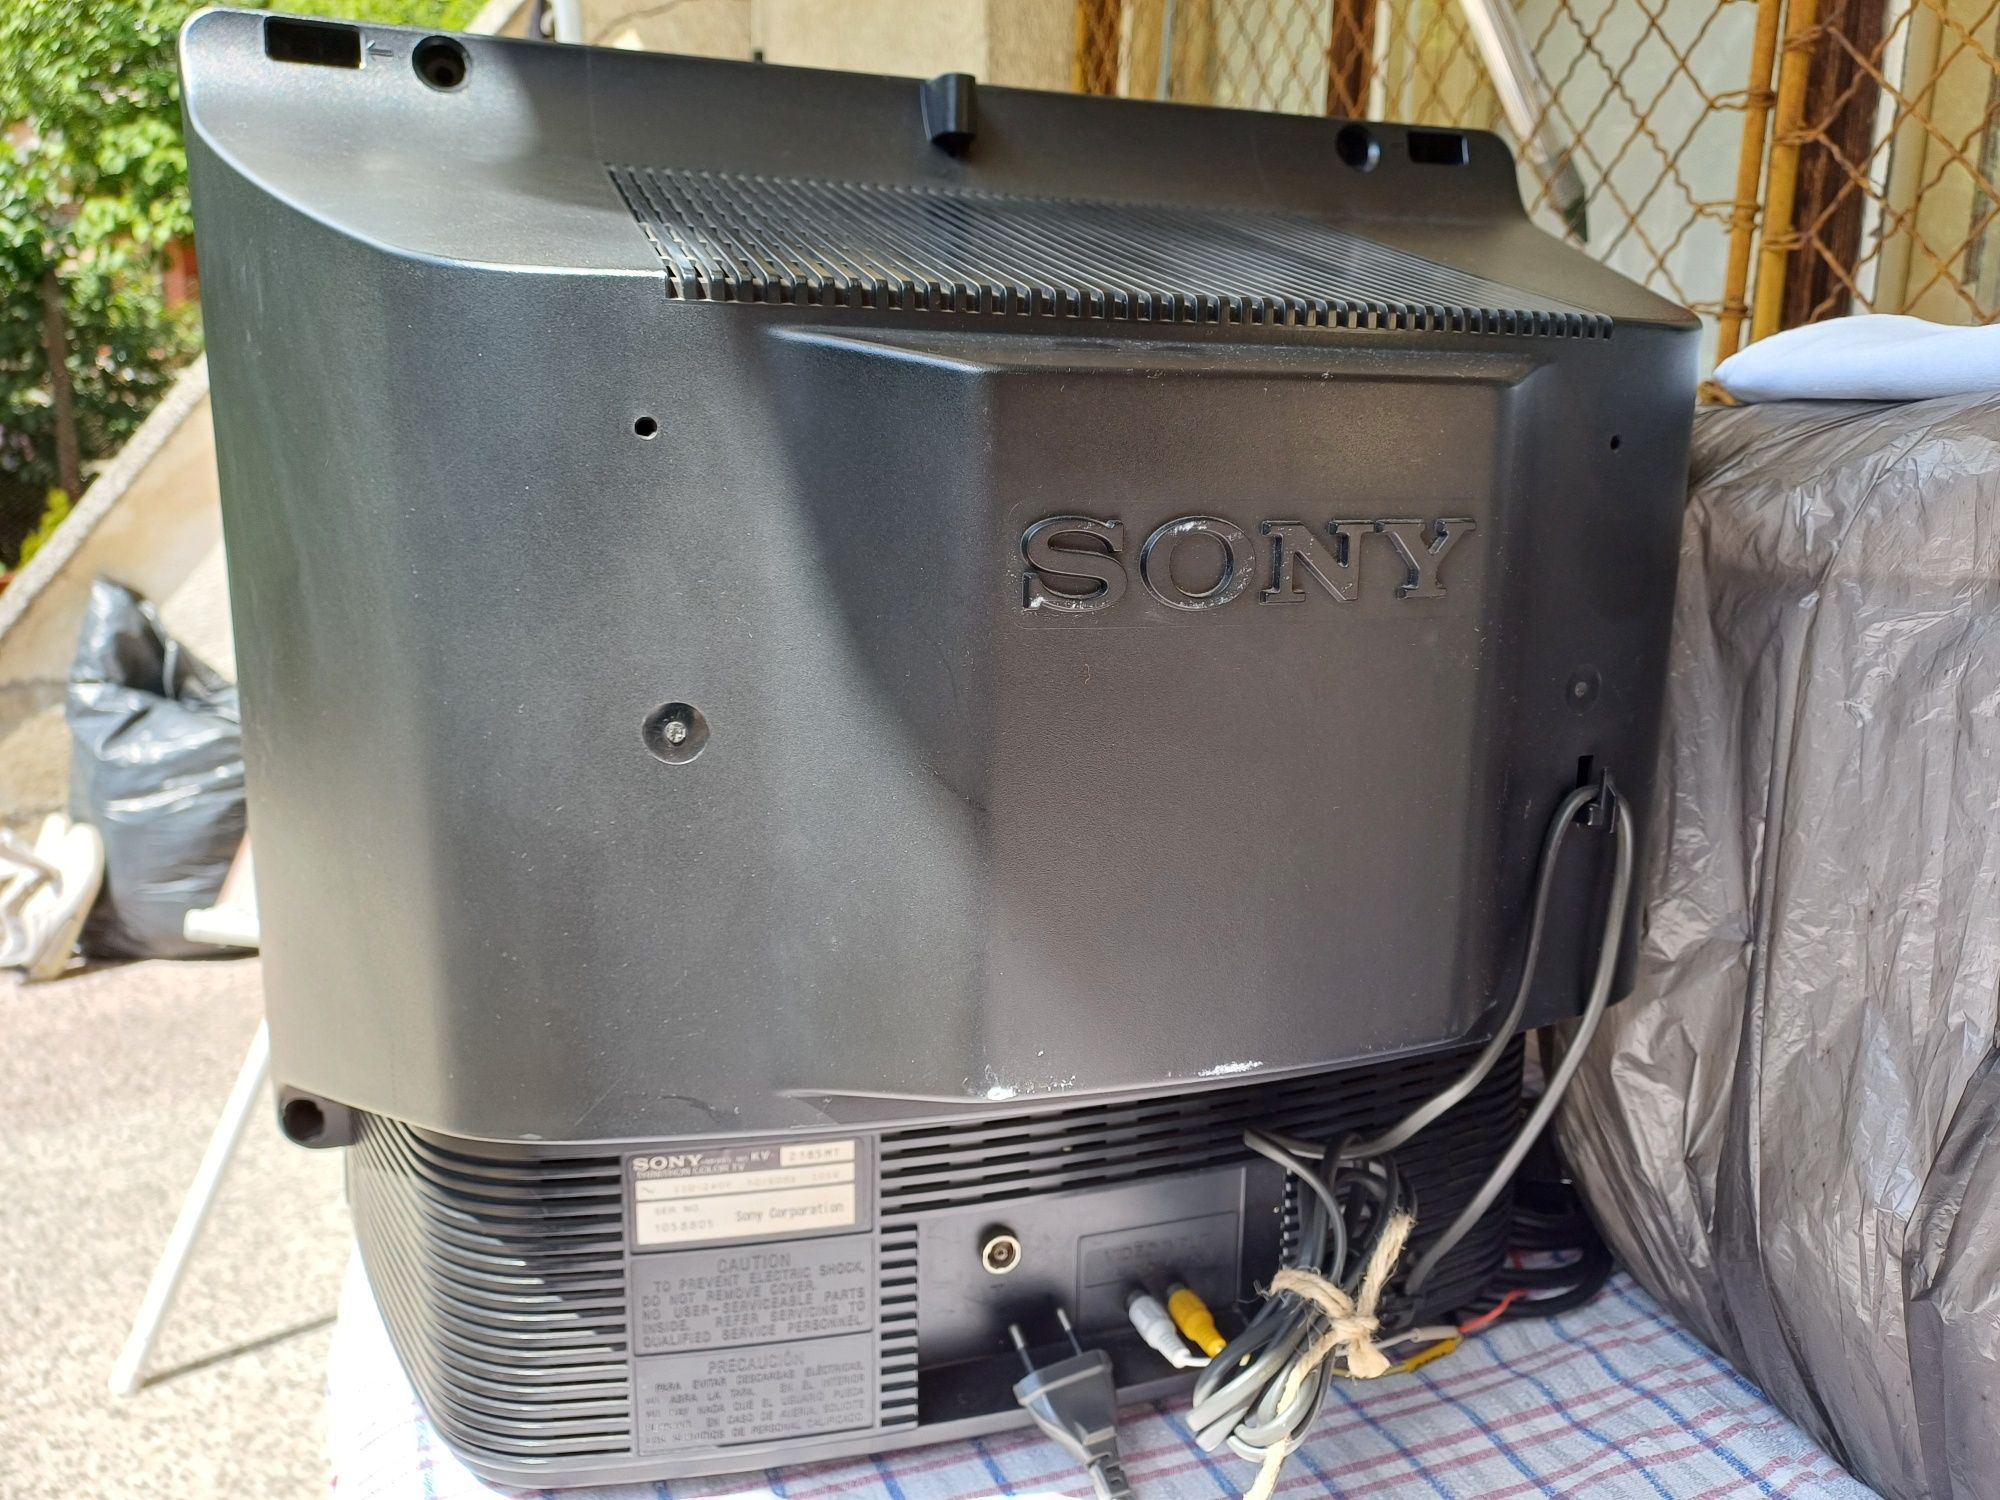 Телевозор 21" - Sony Trinitron KV-2185MT

-Телевизорът е много запазен